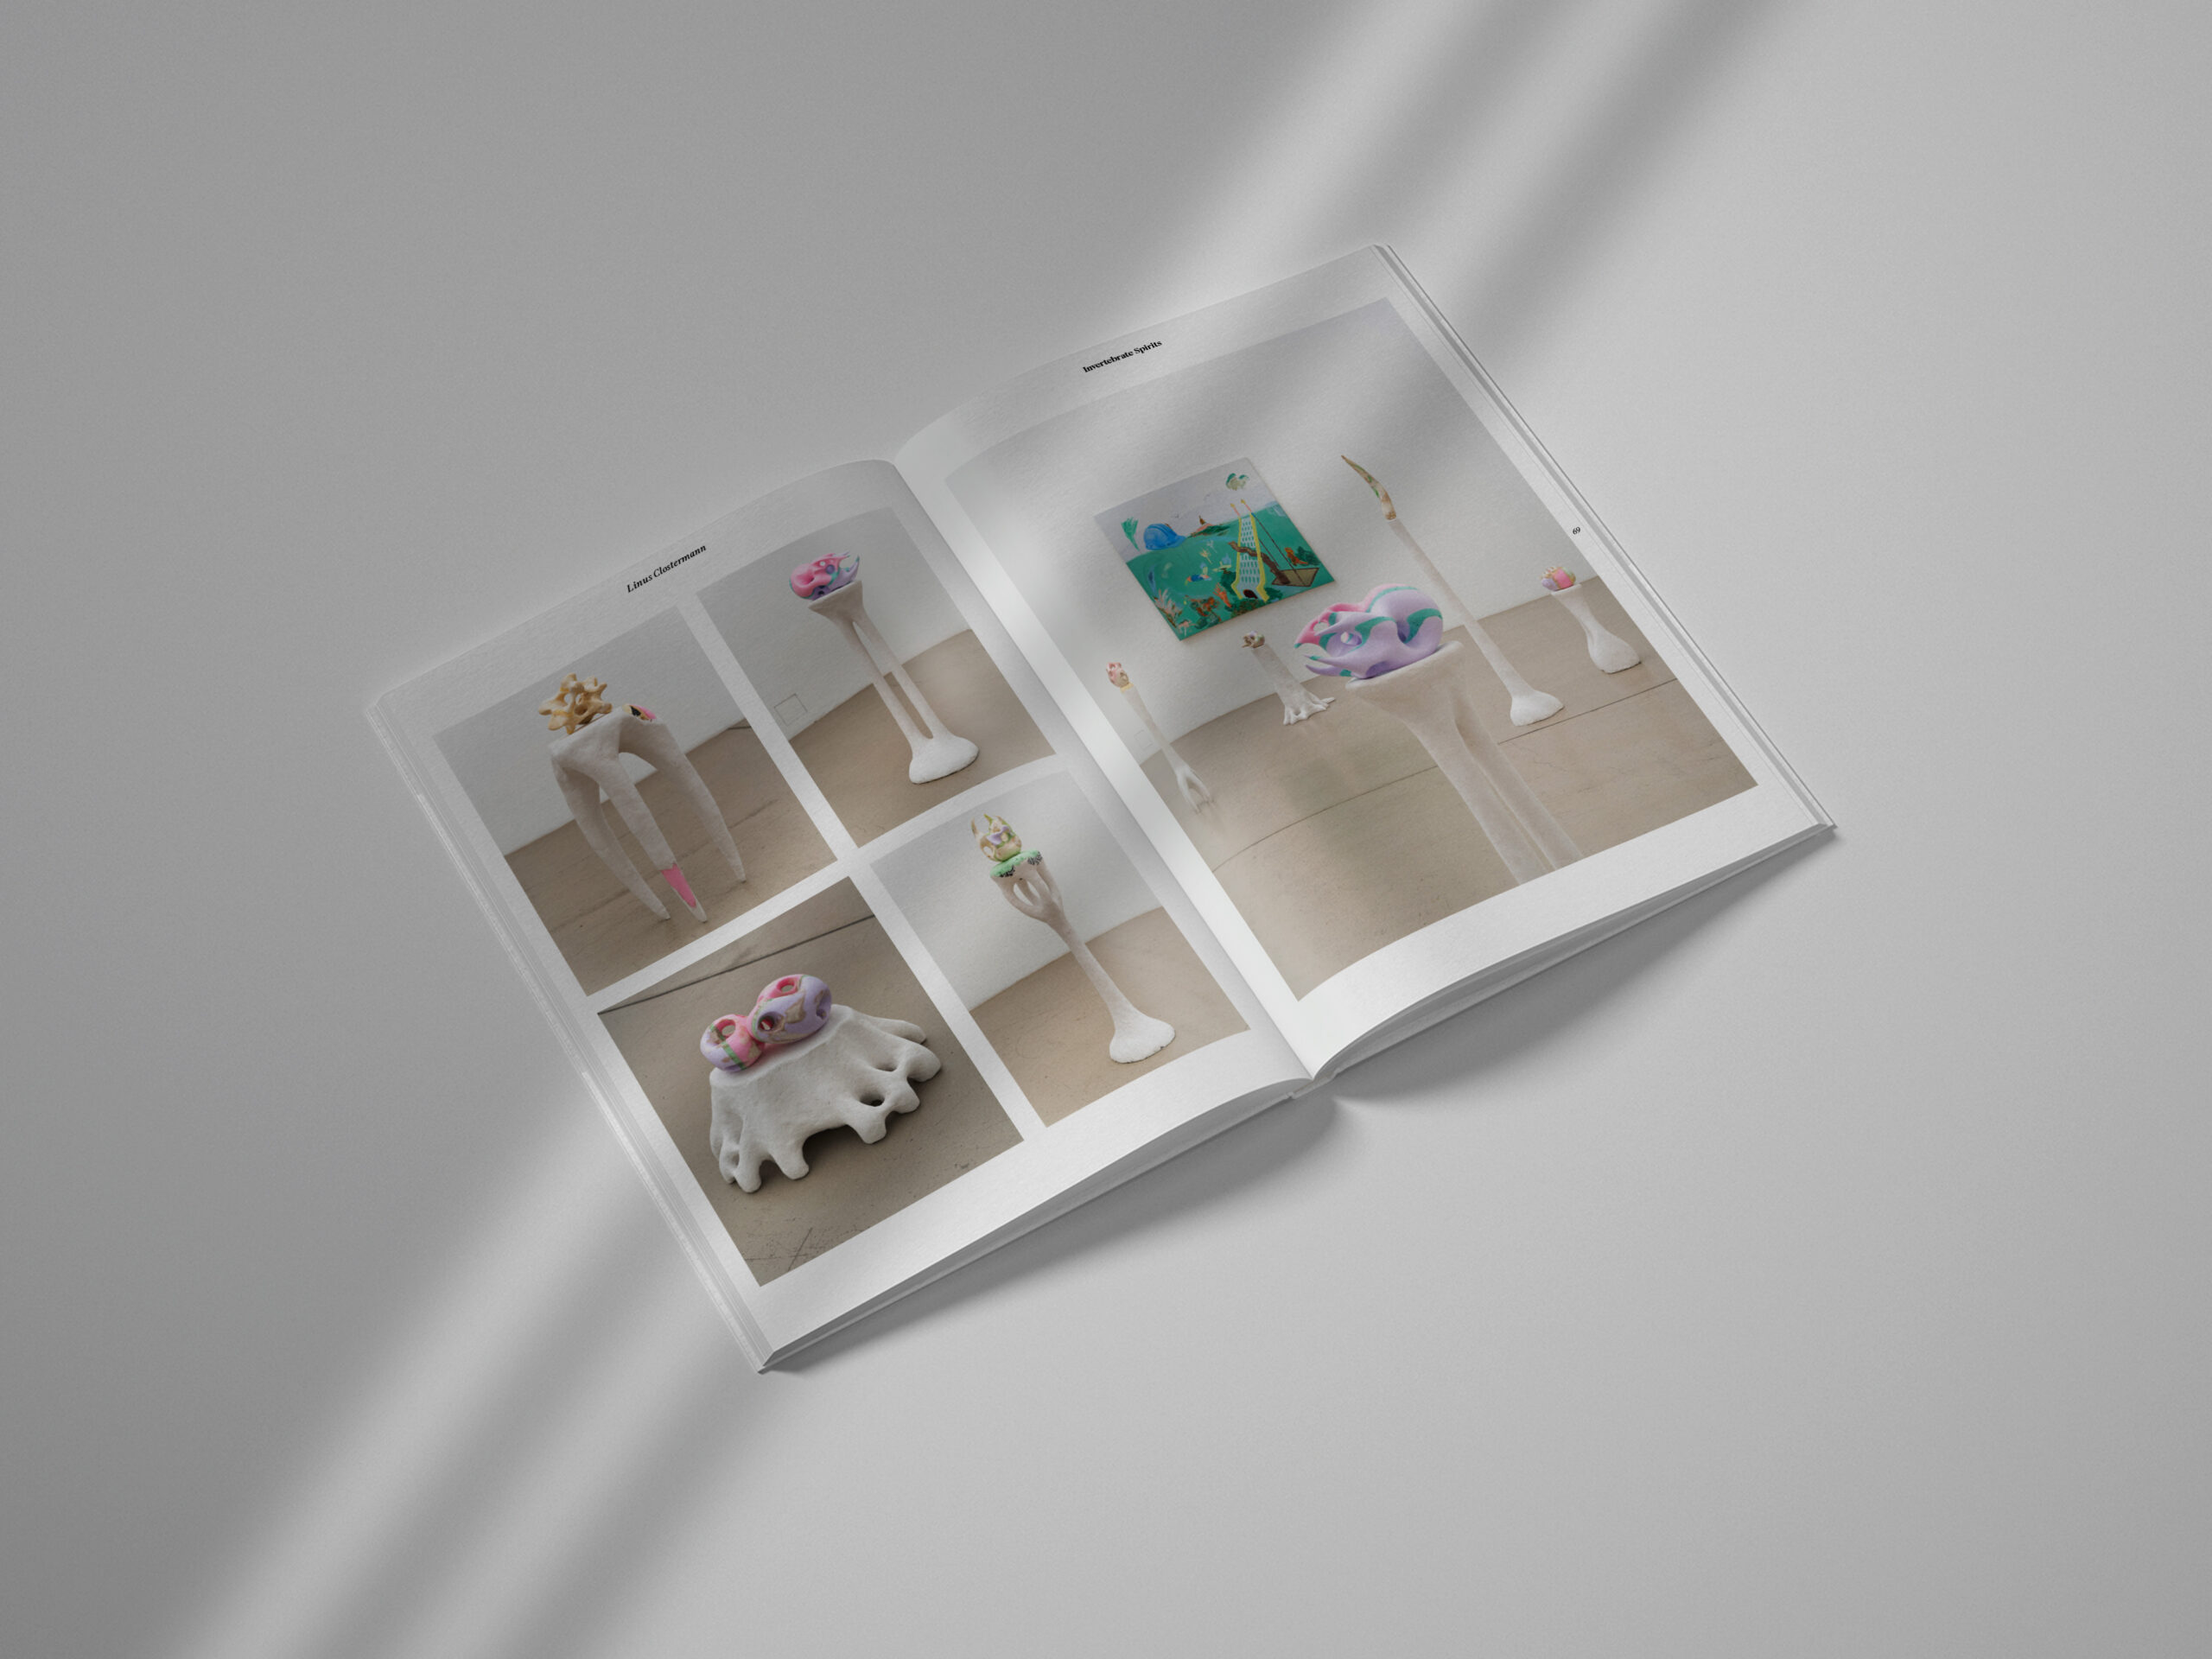 examen-exhibitiondesign-management-servicedesign-kunstkaltalog-publikation-11